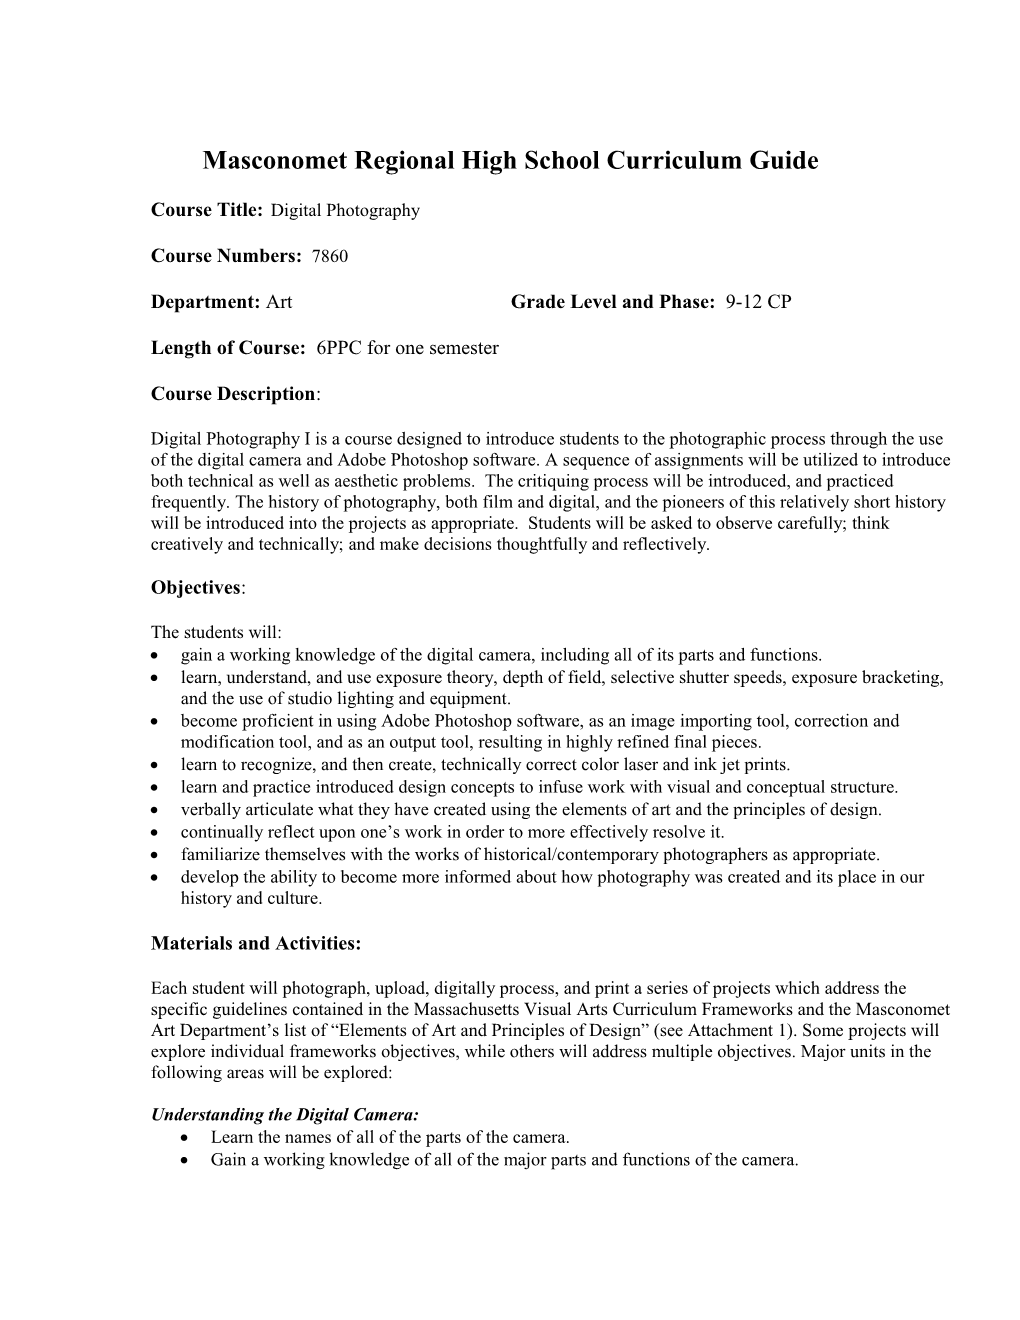 Masconomet Regional High School Curriculum Guide